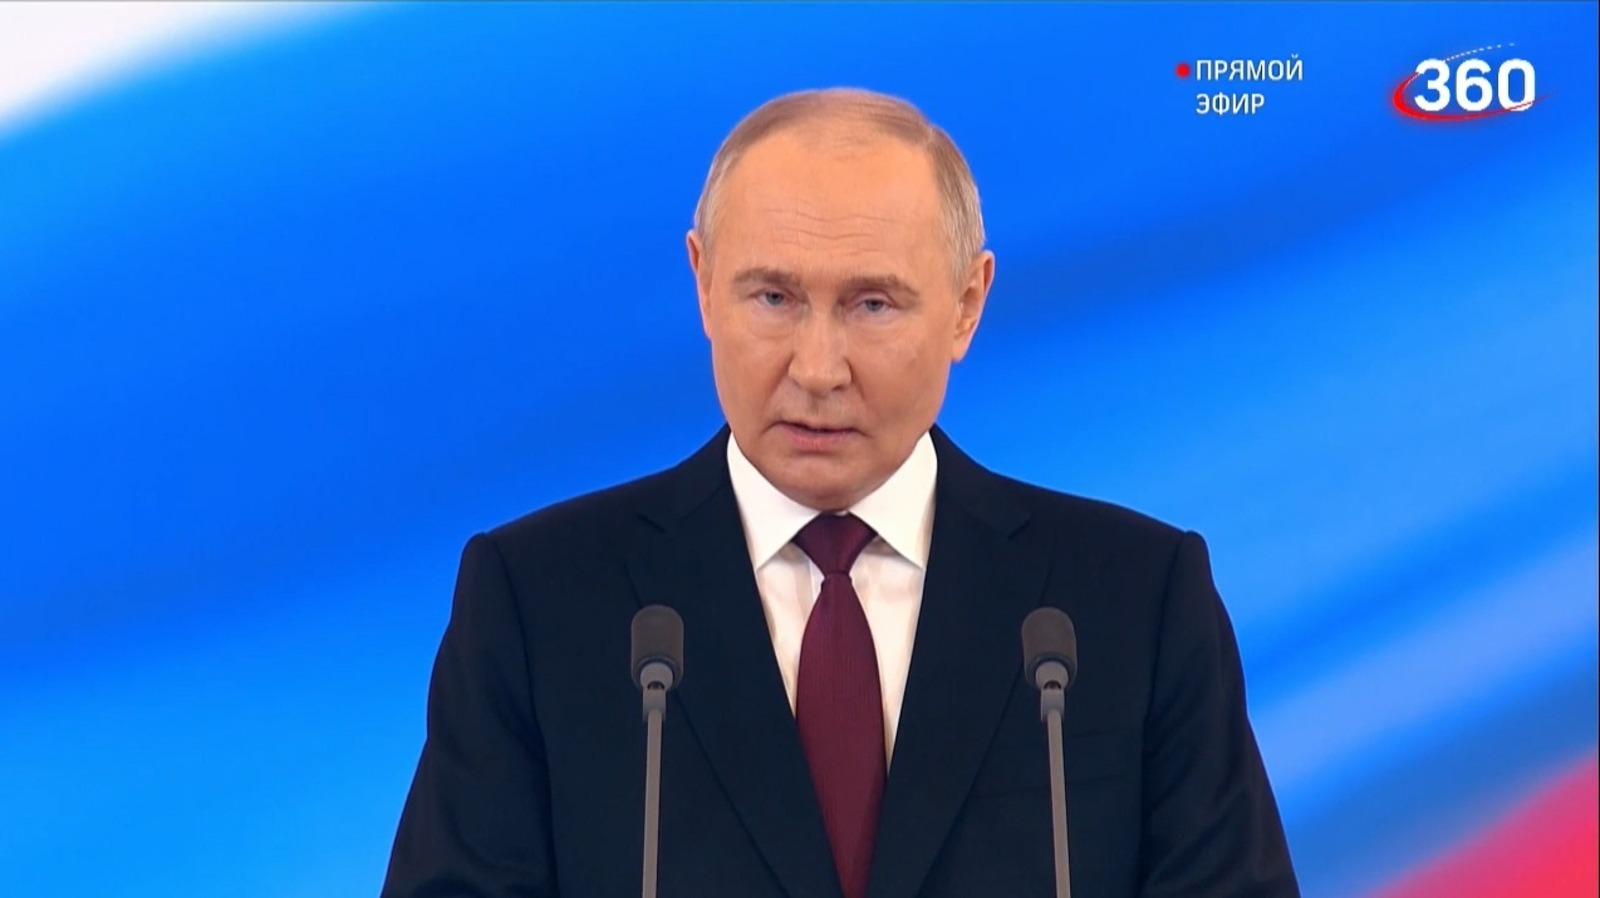 Владимир Путин после вступления в должность президента обратился к россиянам